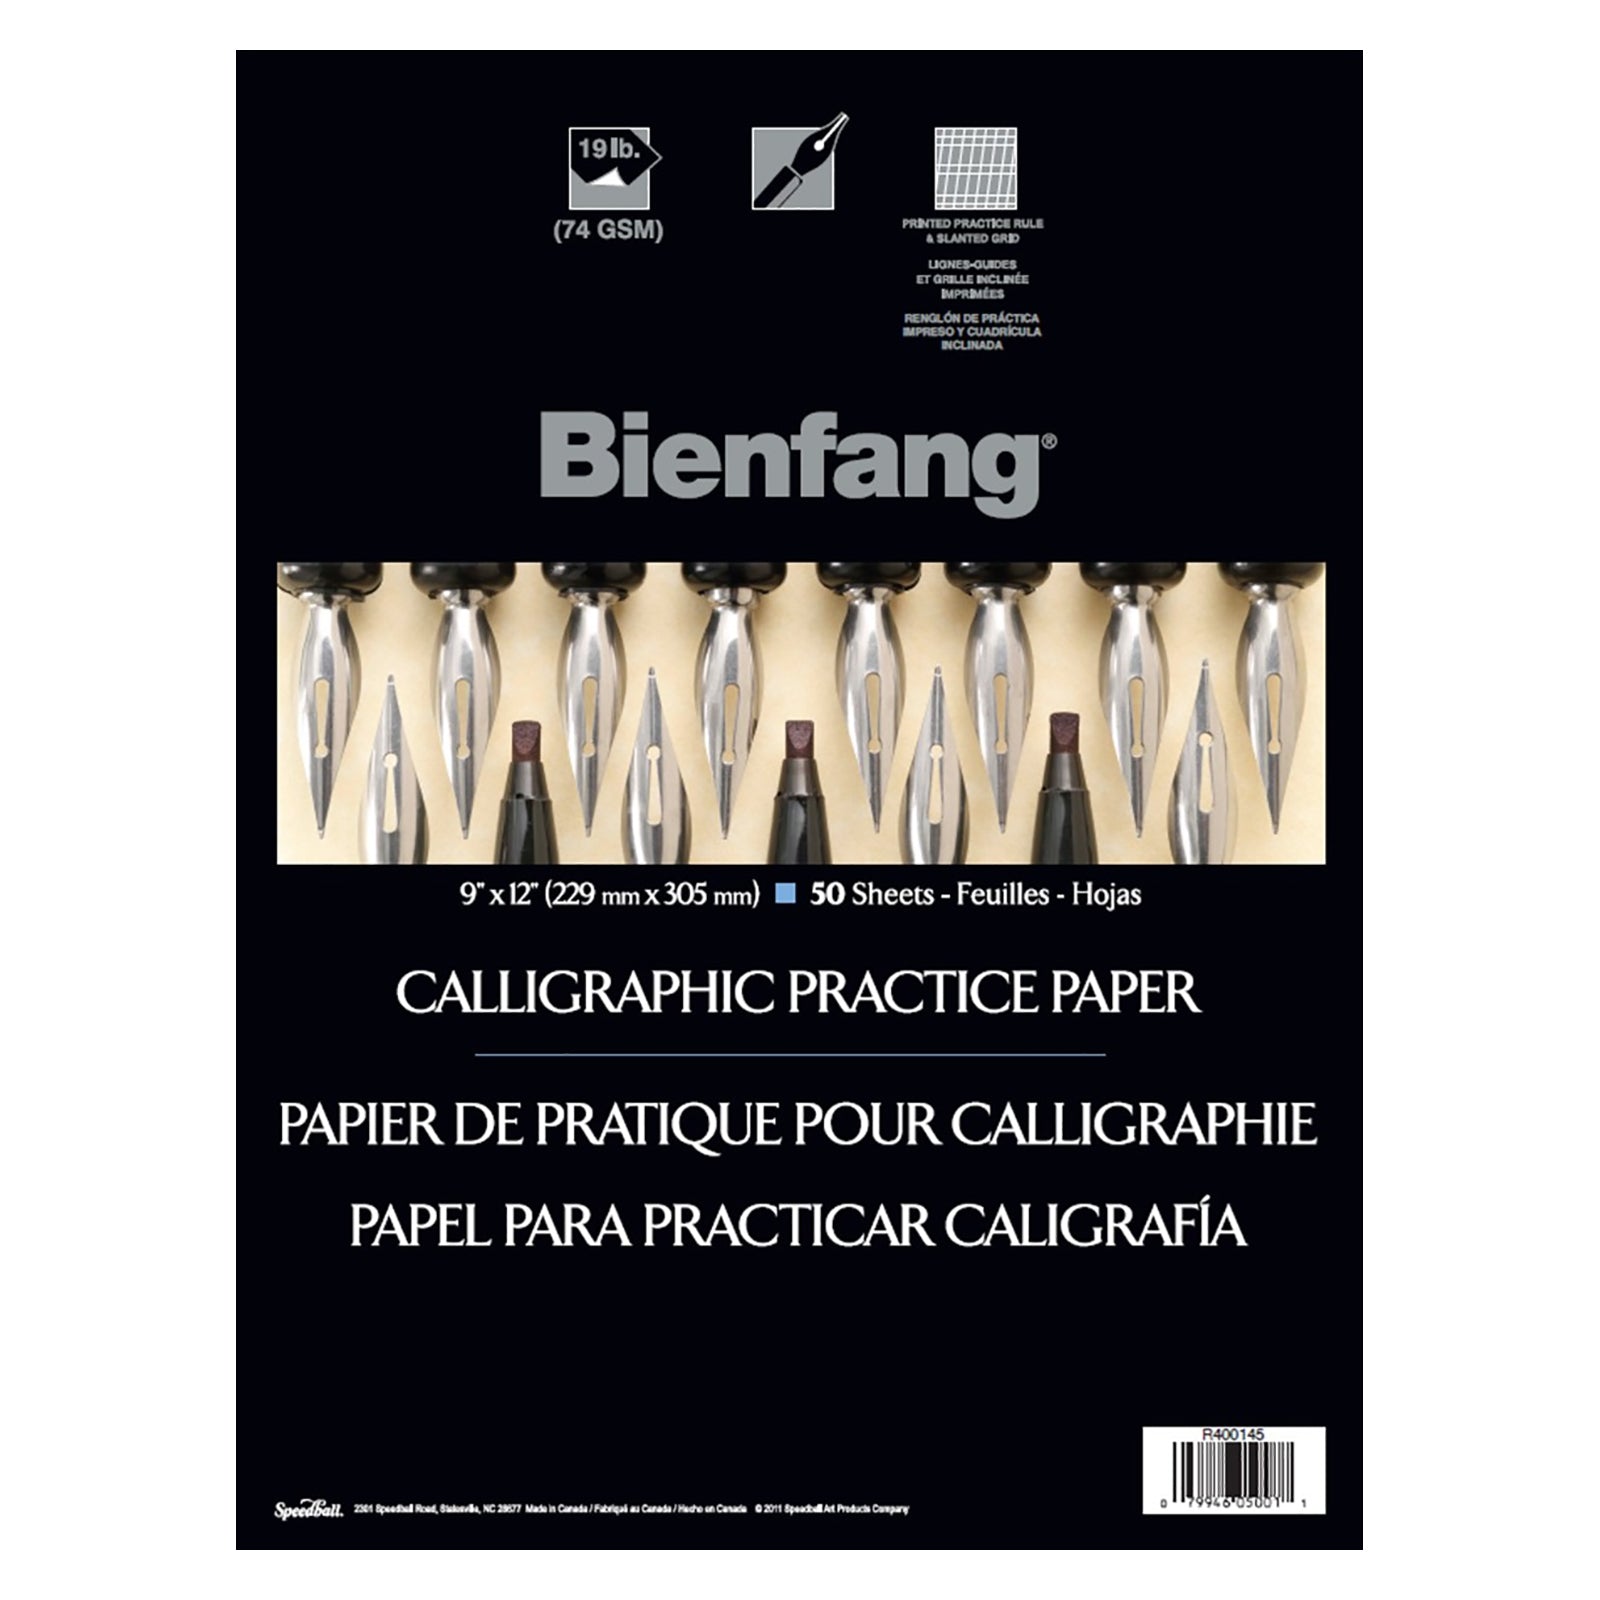 Bienfang Calligraphic Practice Pad 9x12